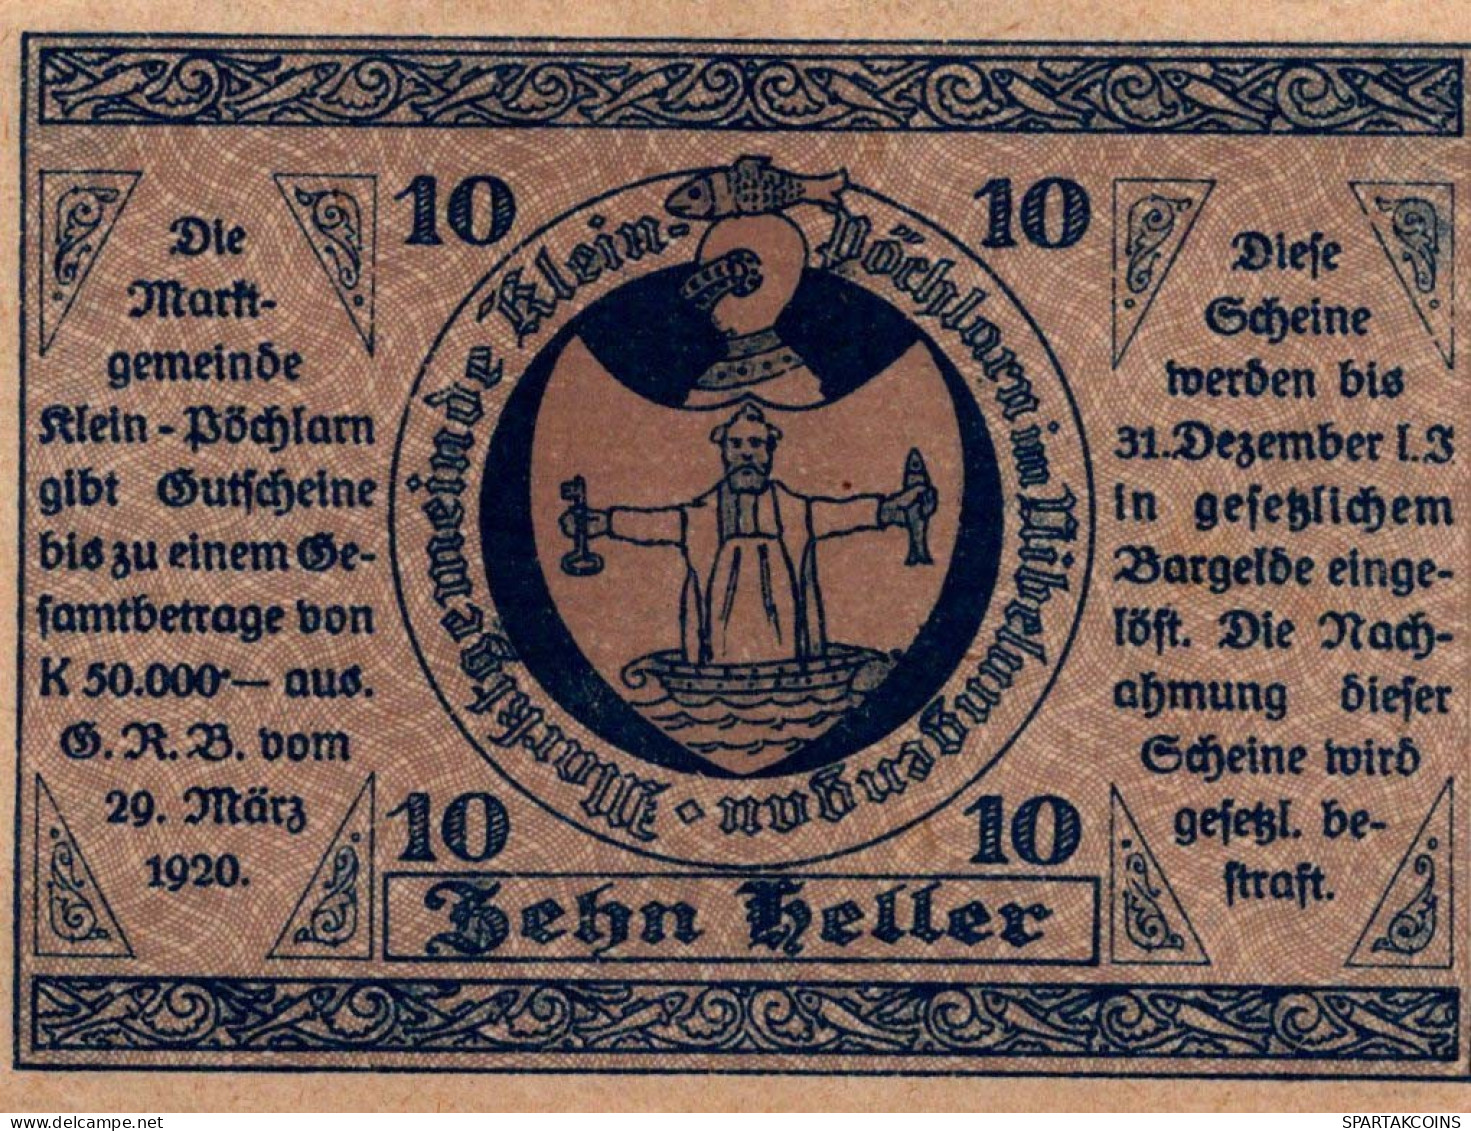 10 HELLER 1920 Stadt KLEIN-PoCHLARN Niedrigeren Österreich Notgeld #PD696 - [11] Local Banknote Issues